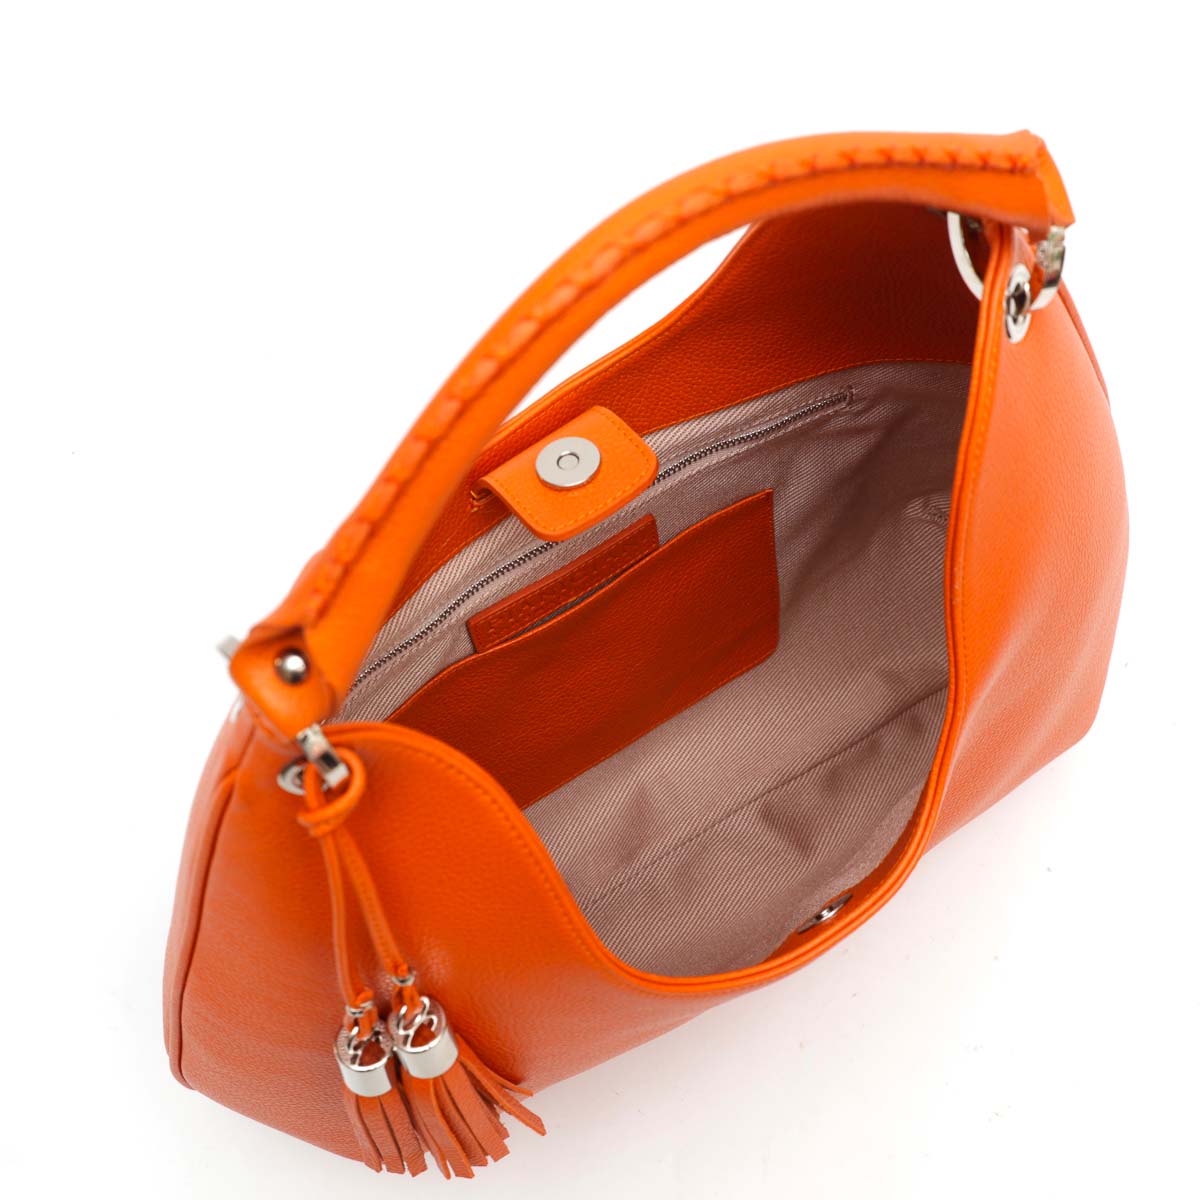 Lou - borsa da donna in pelle arancio, modello a spalla con tracolla by Pianigiani